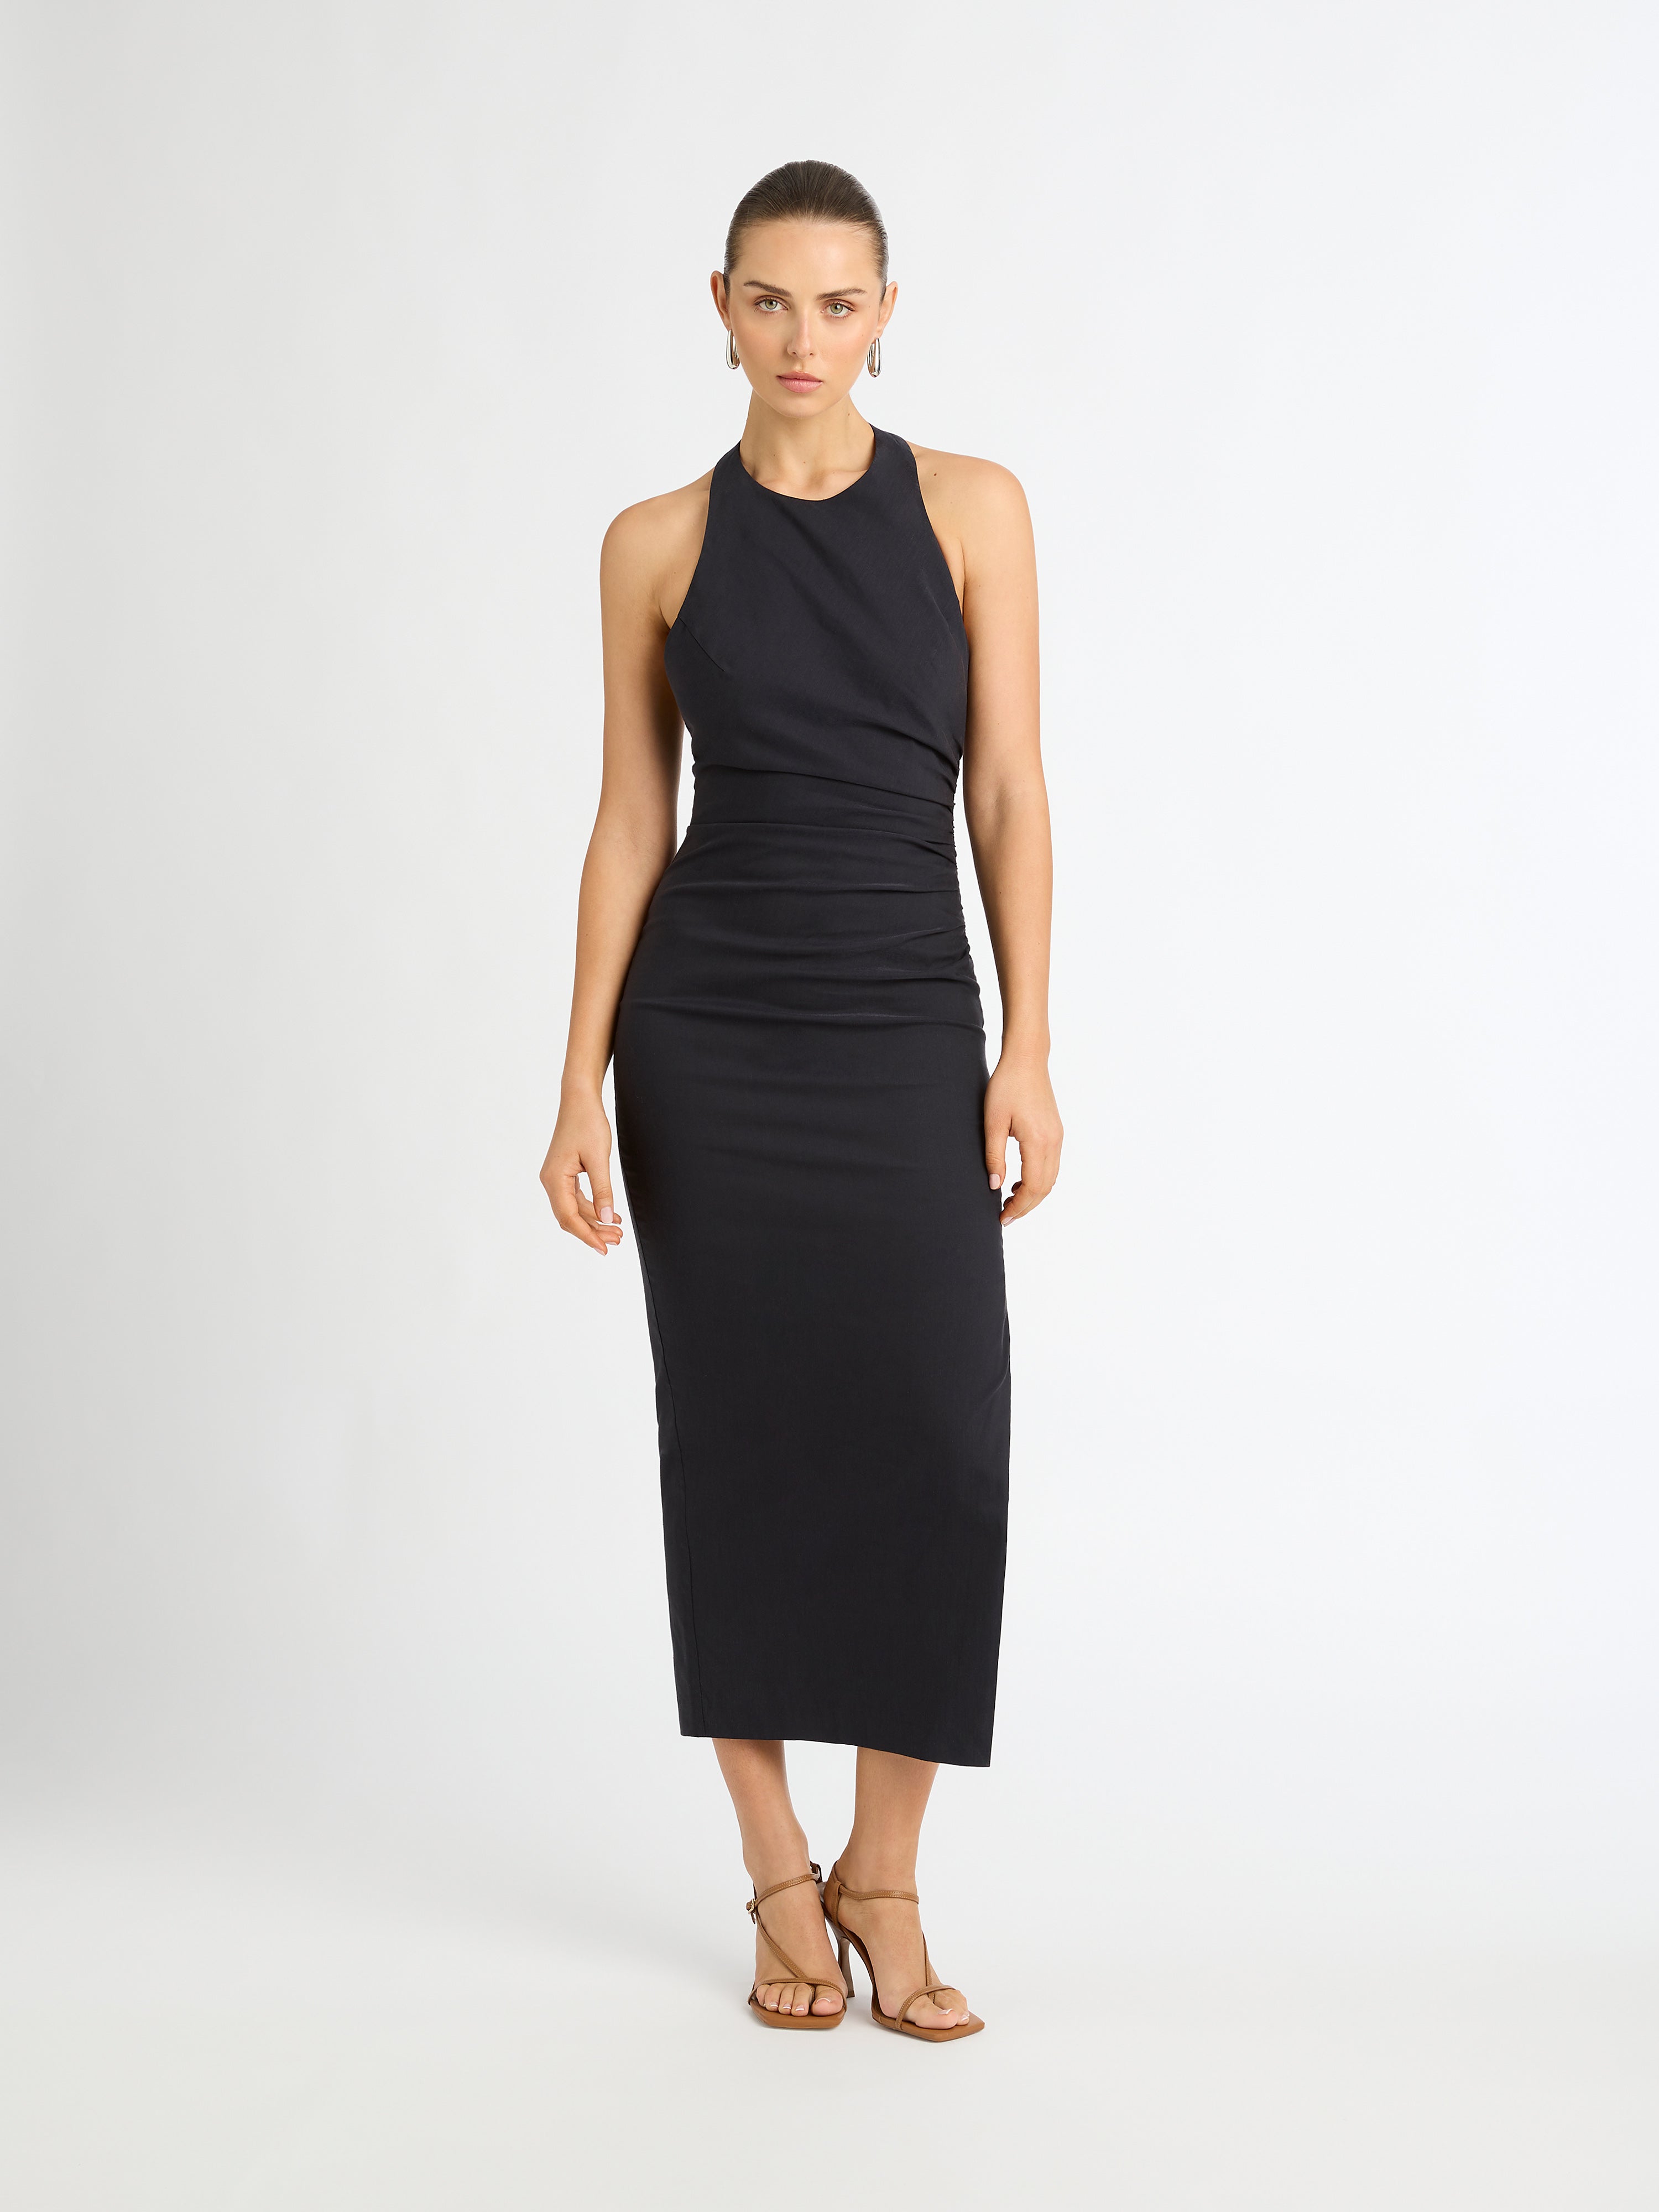 Women's Black Semi Formal Dresses - UCenter Dress